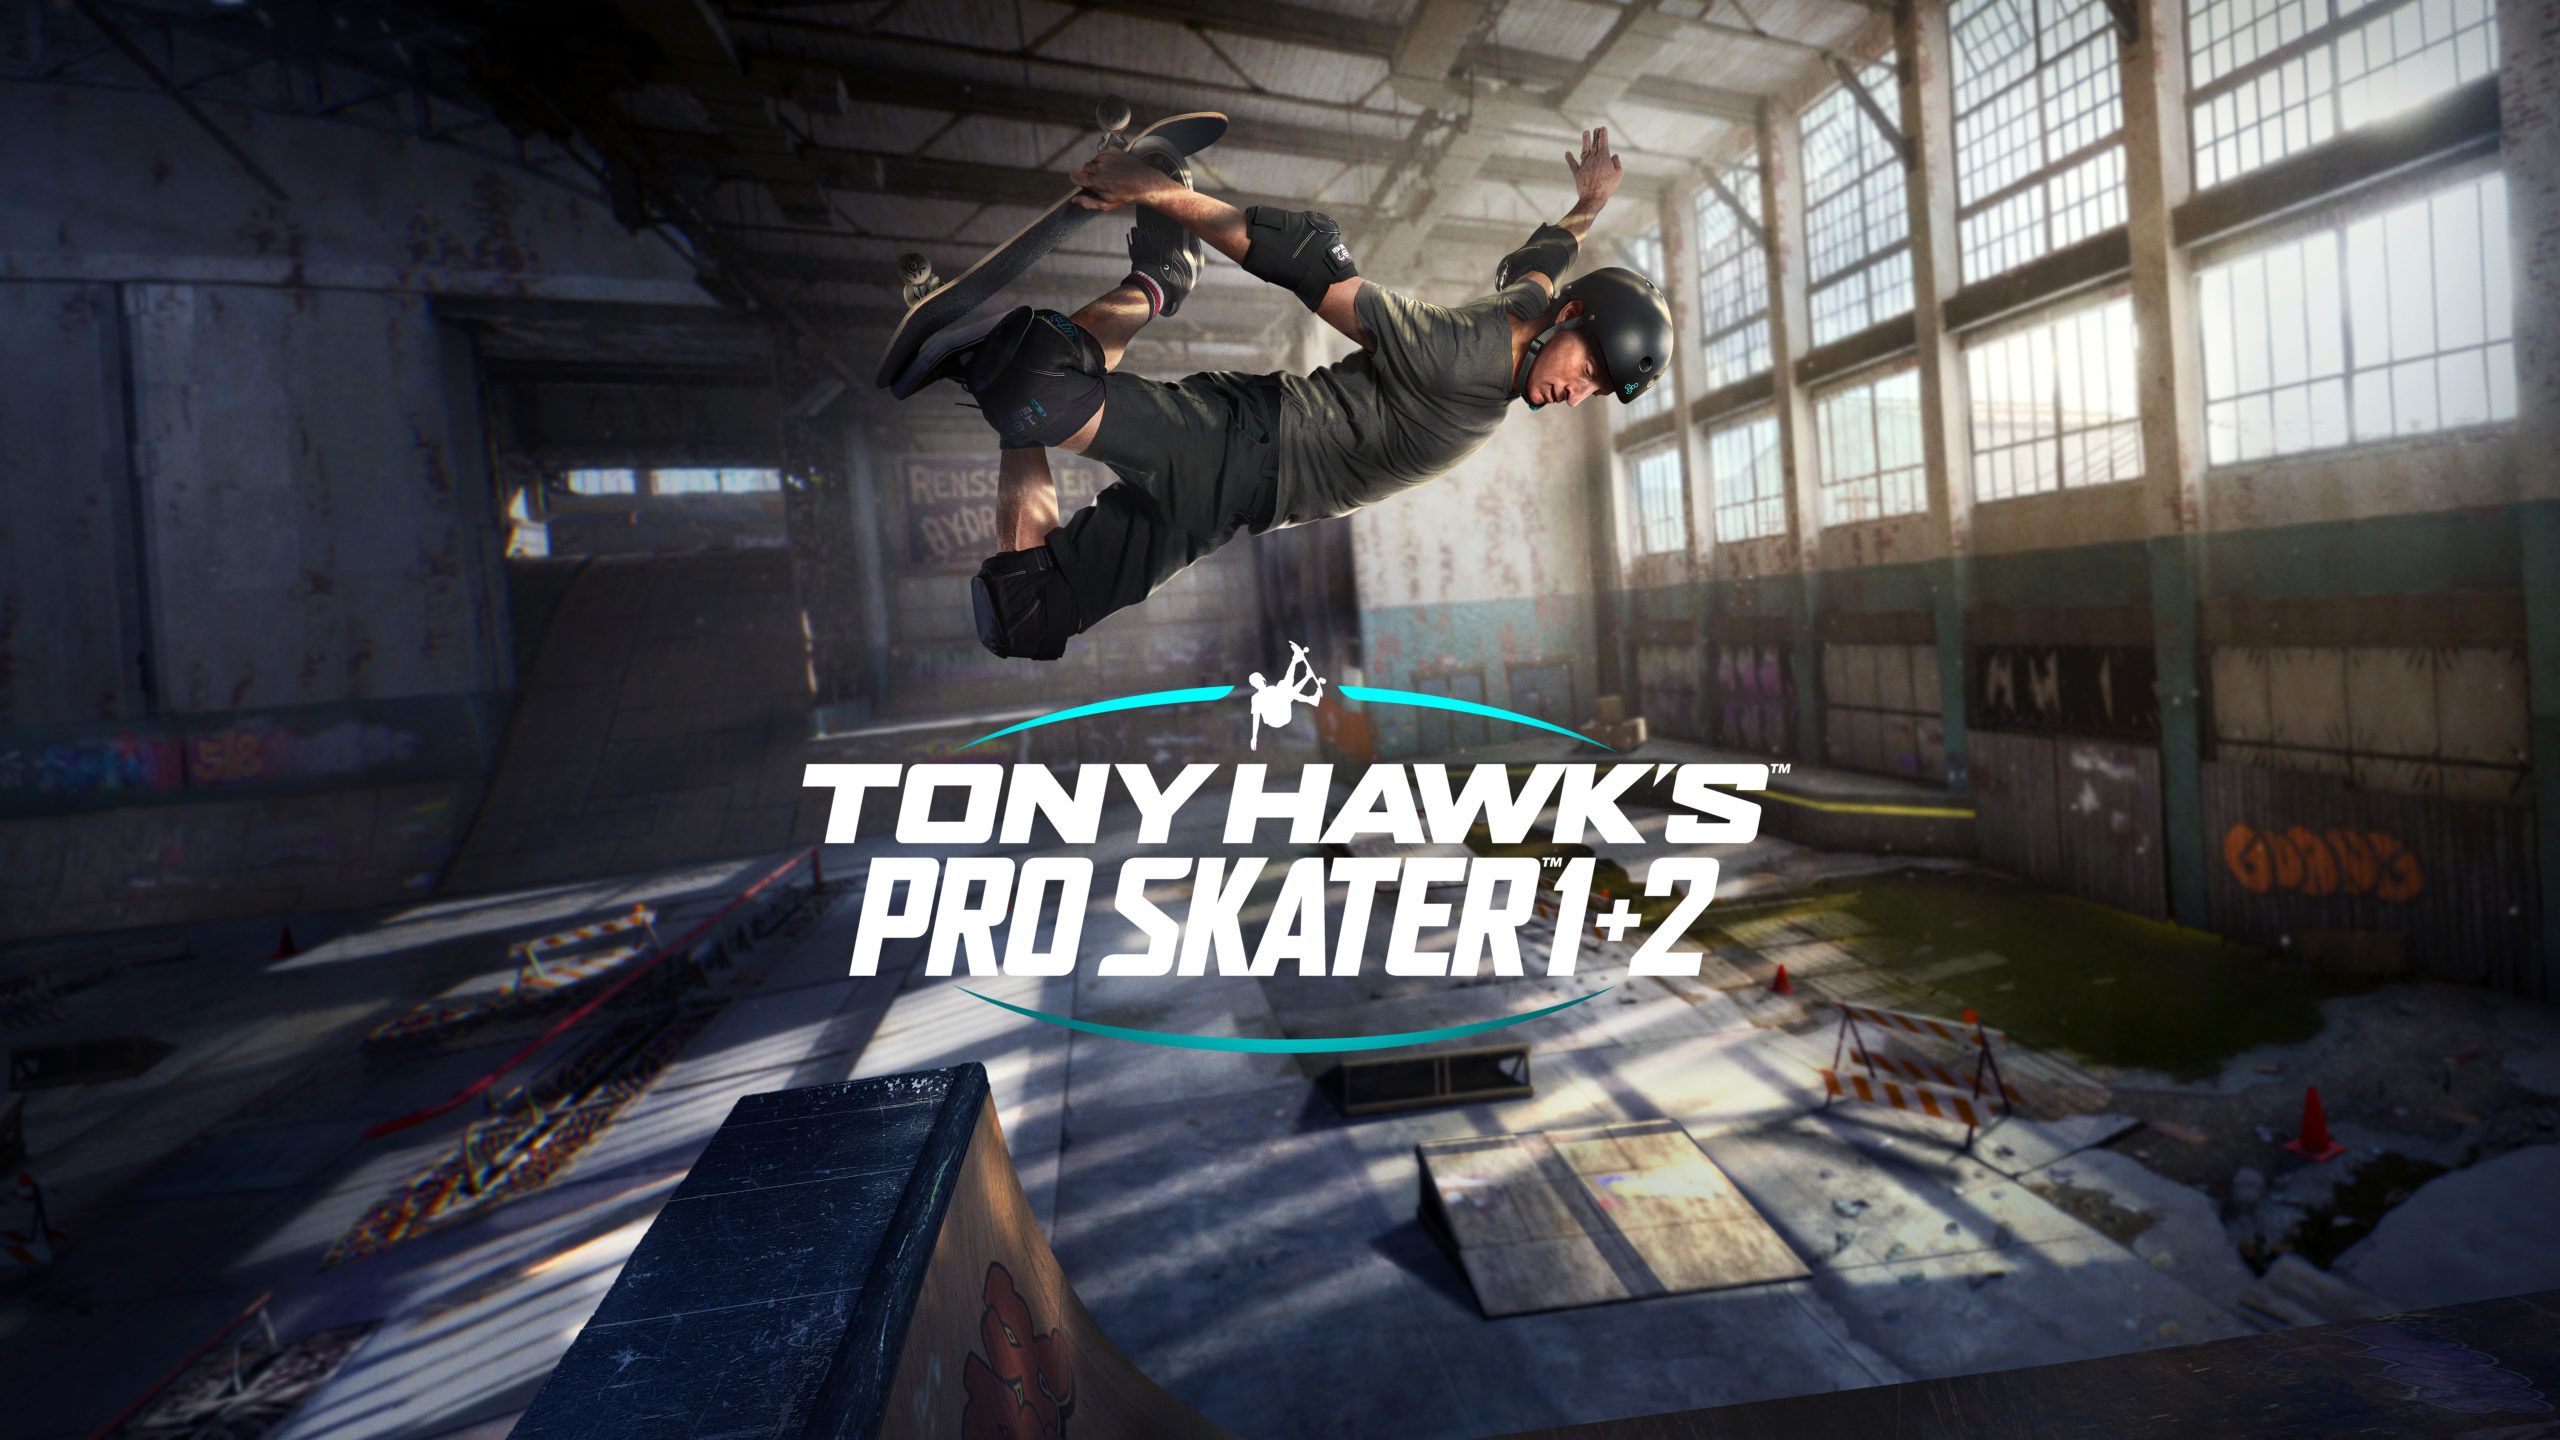 Tony Hawk's Pro Skater 1 and 2 Return!